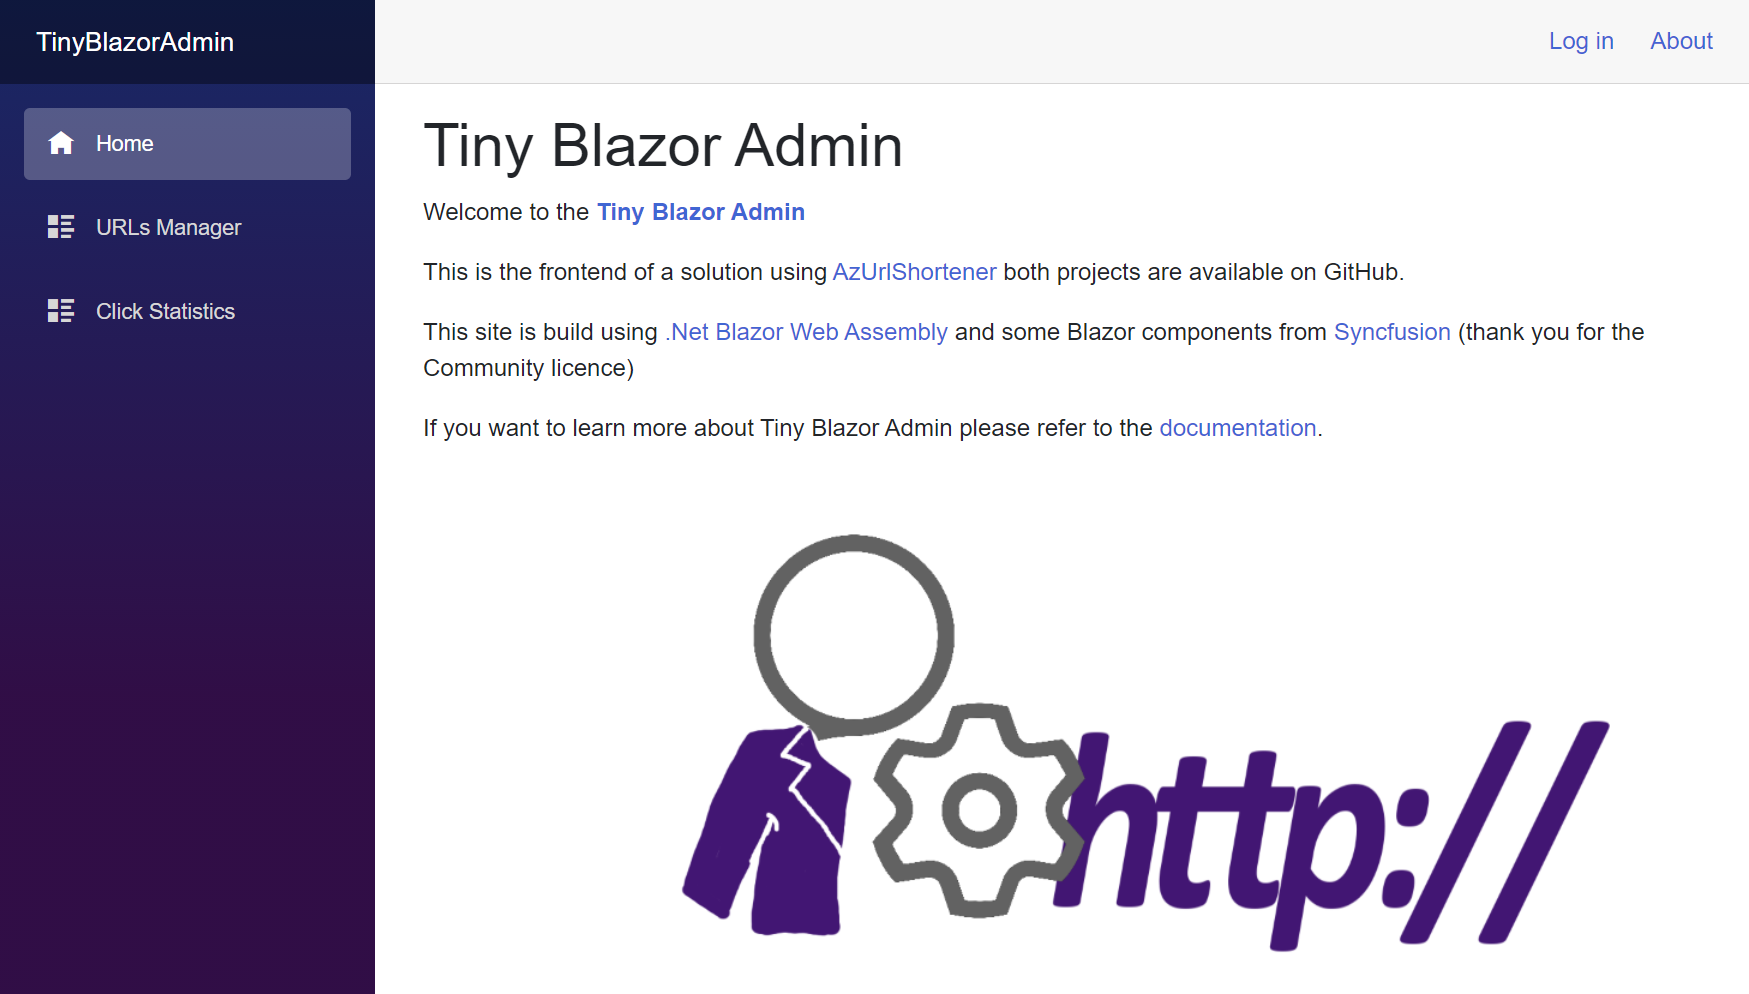 Tiny Blazor Admin home page